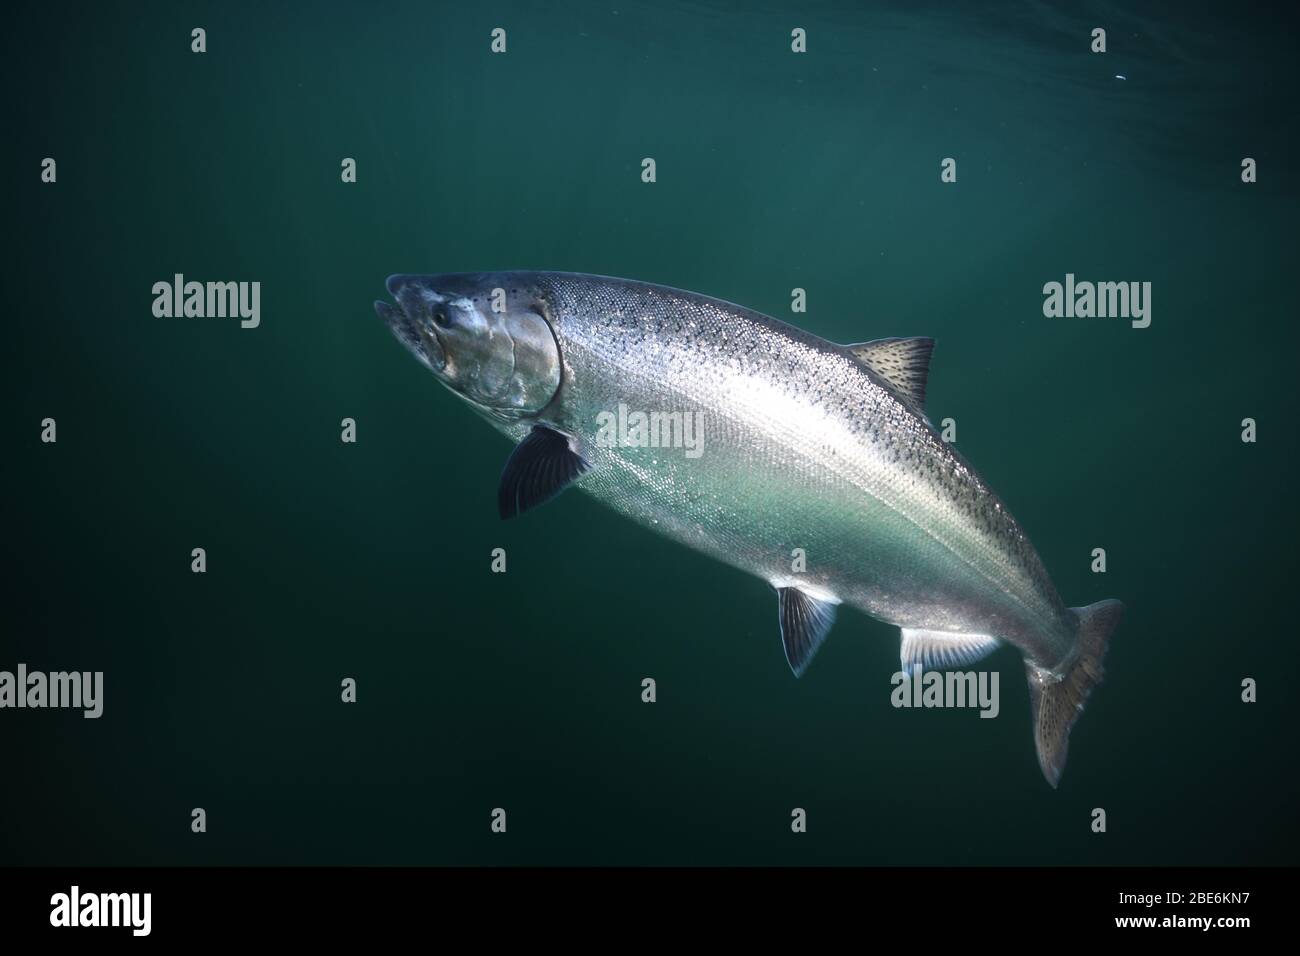 Saumon quinnat ou saumon King, Oncorhynchus tshawytscha, pris avec une pêche au bord de l'océan ou du lac. Banque D'Images